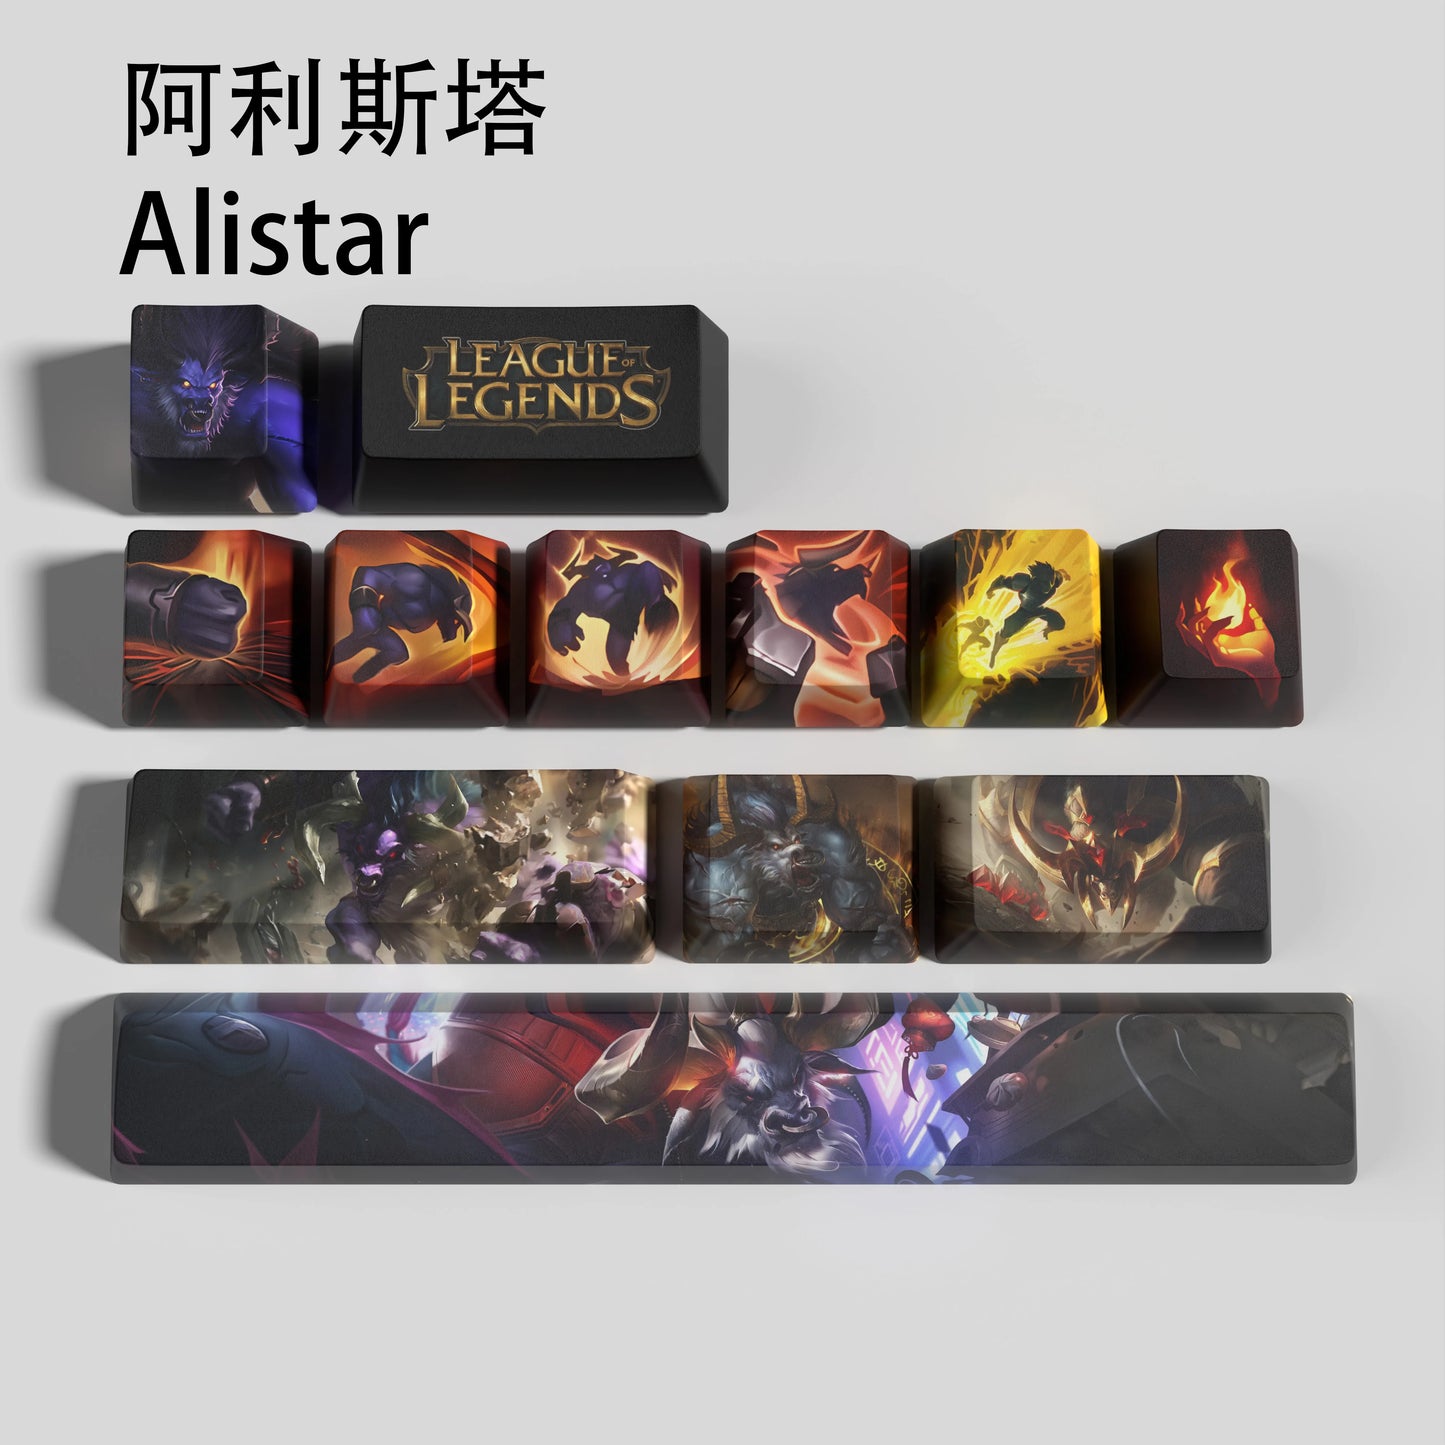 Alistar keycaps